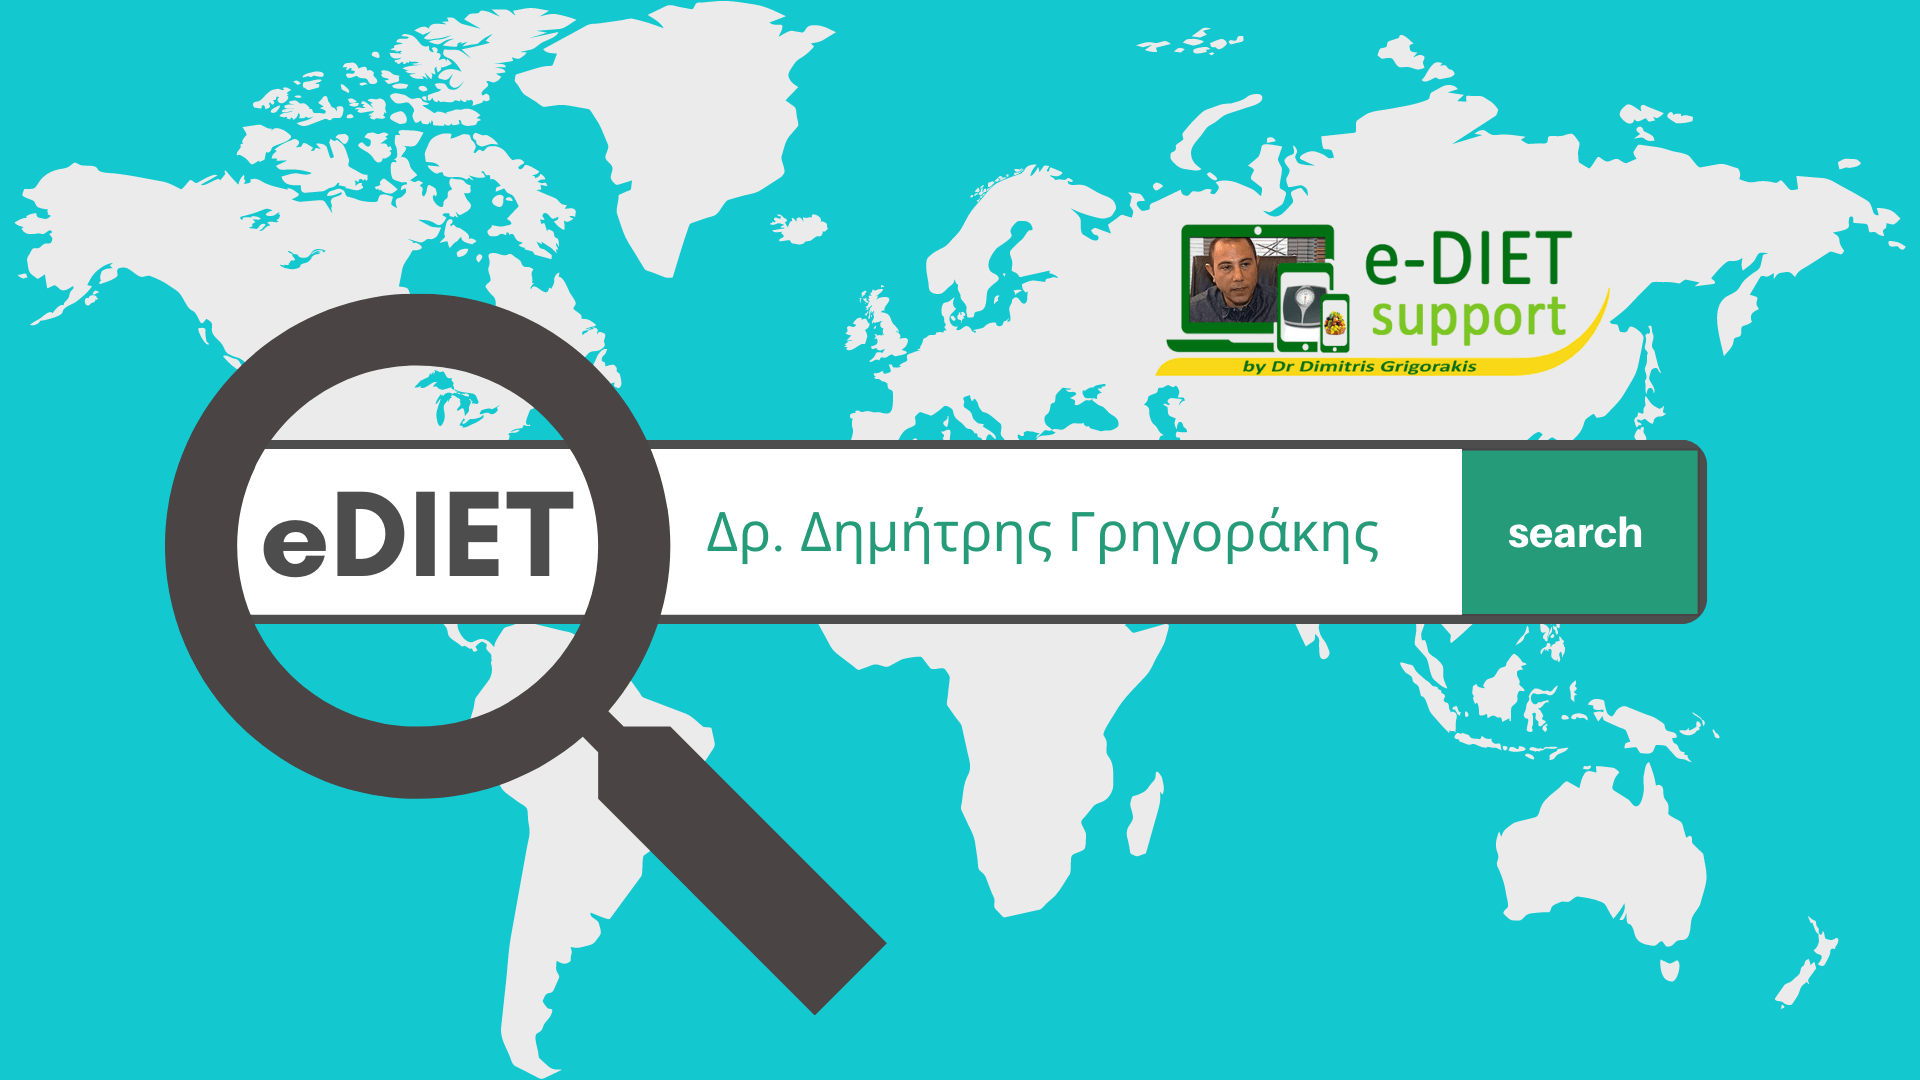 e-Diet Support by Dr. Dimitris Grigorakis